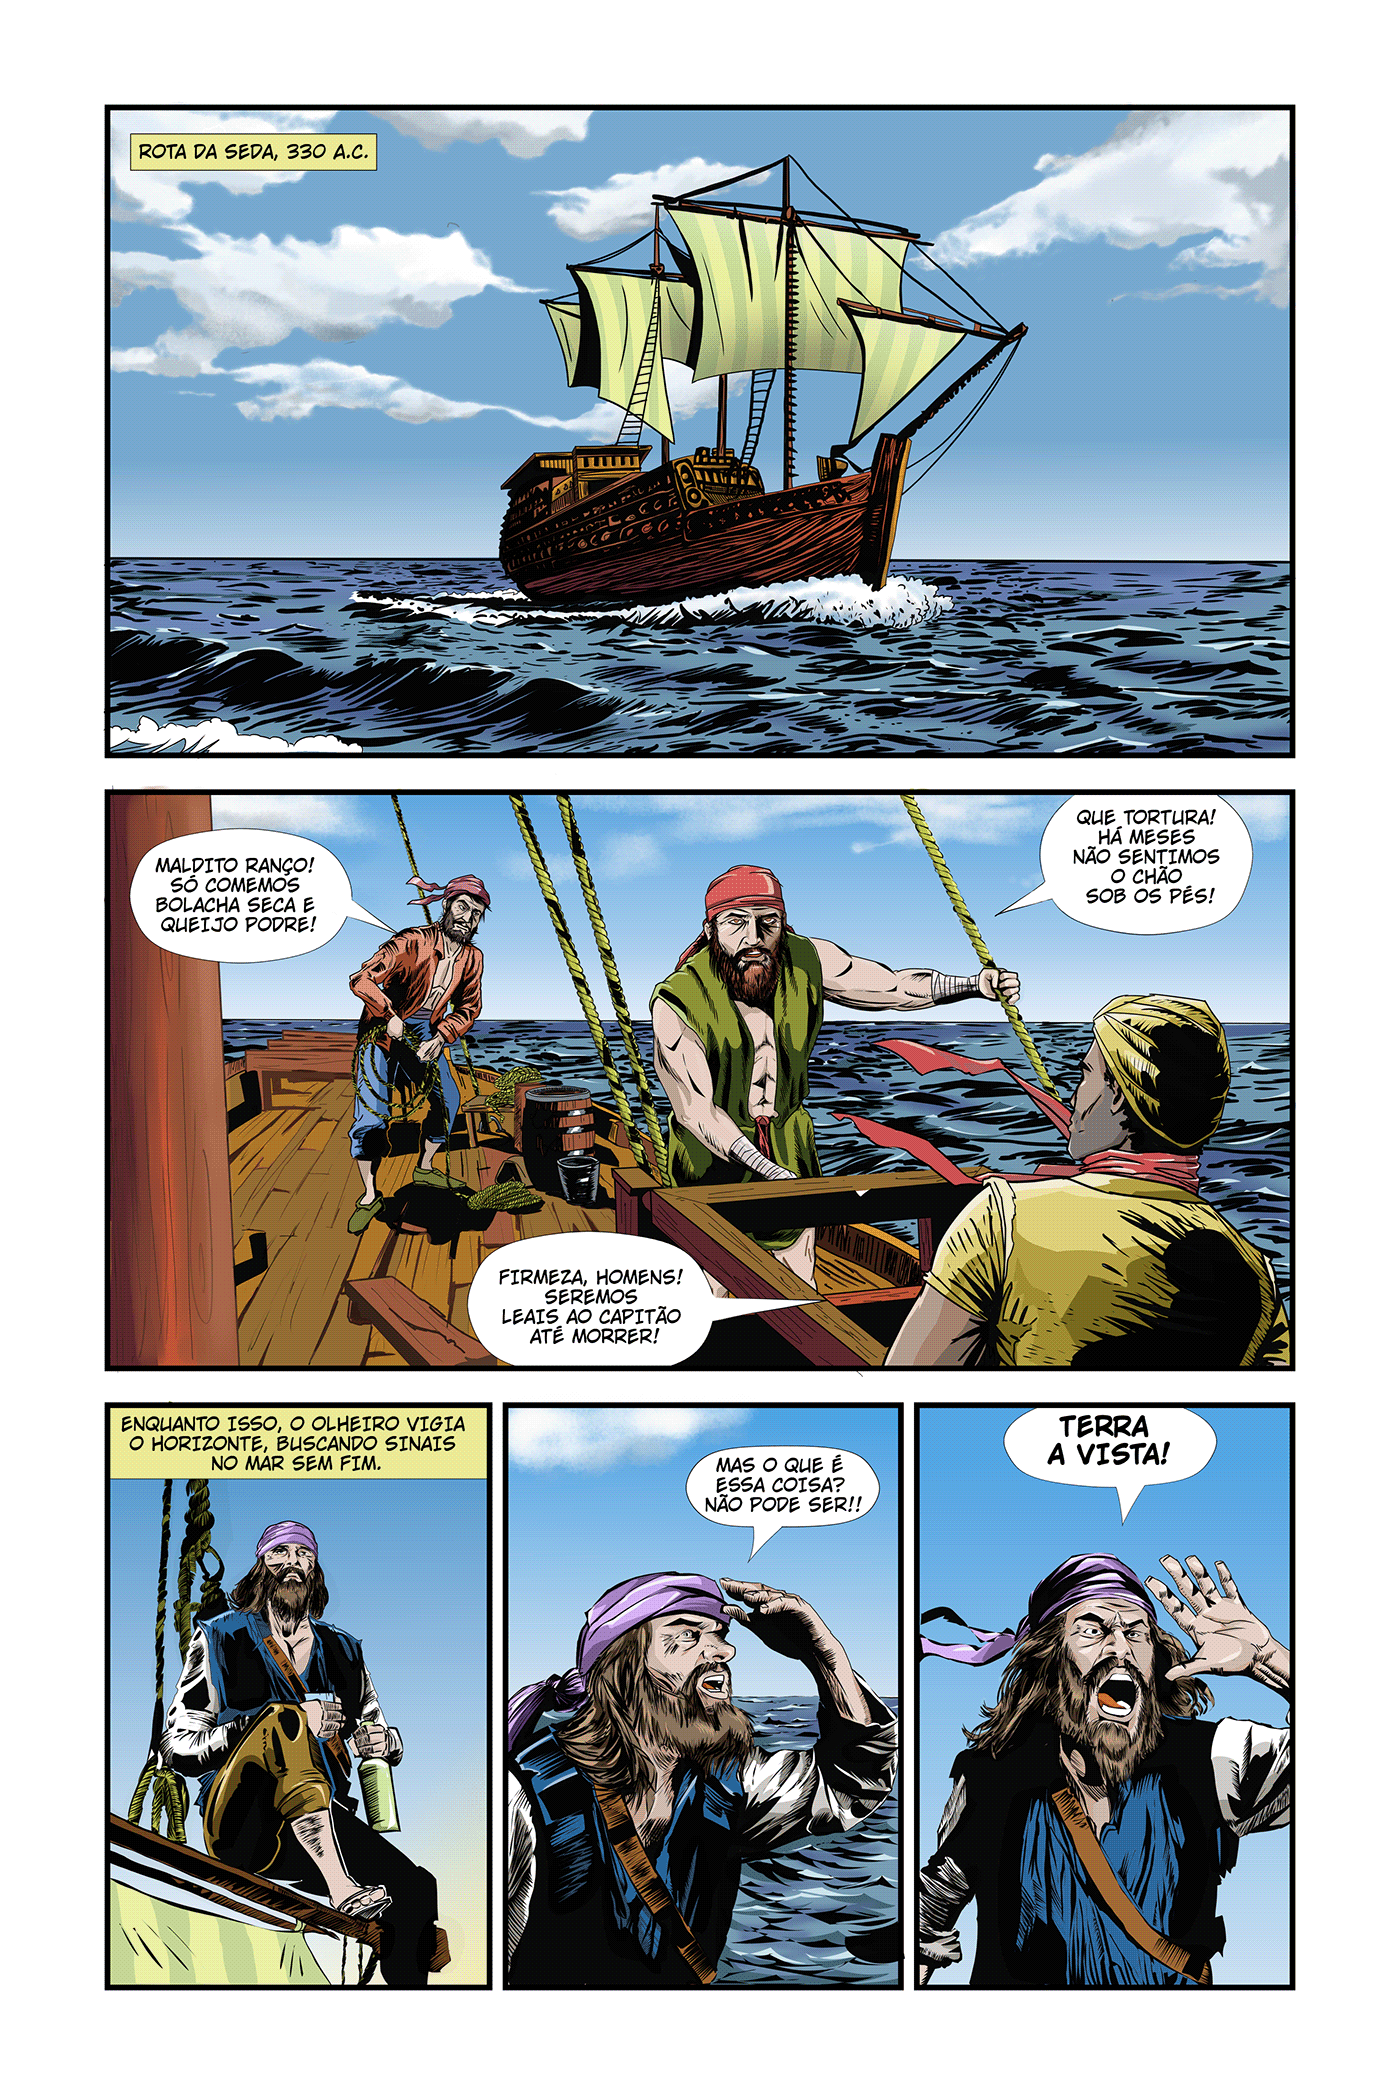 História em quadrinhos autoral sobre aventura épica em uma terra fantástica 